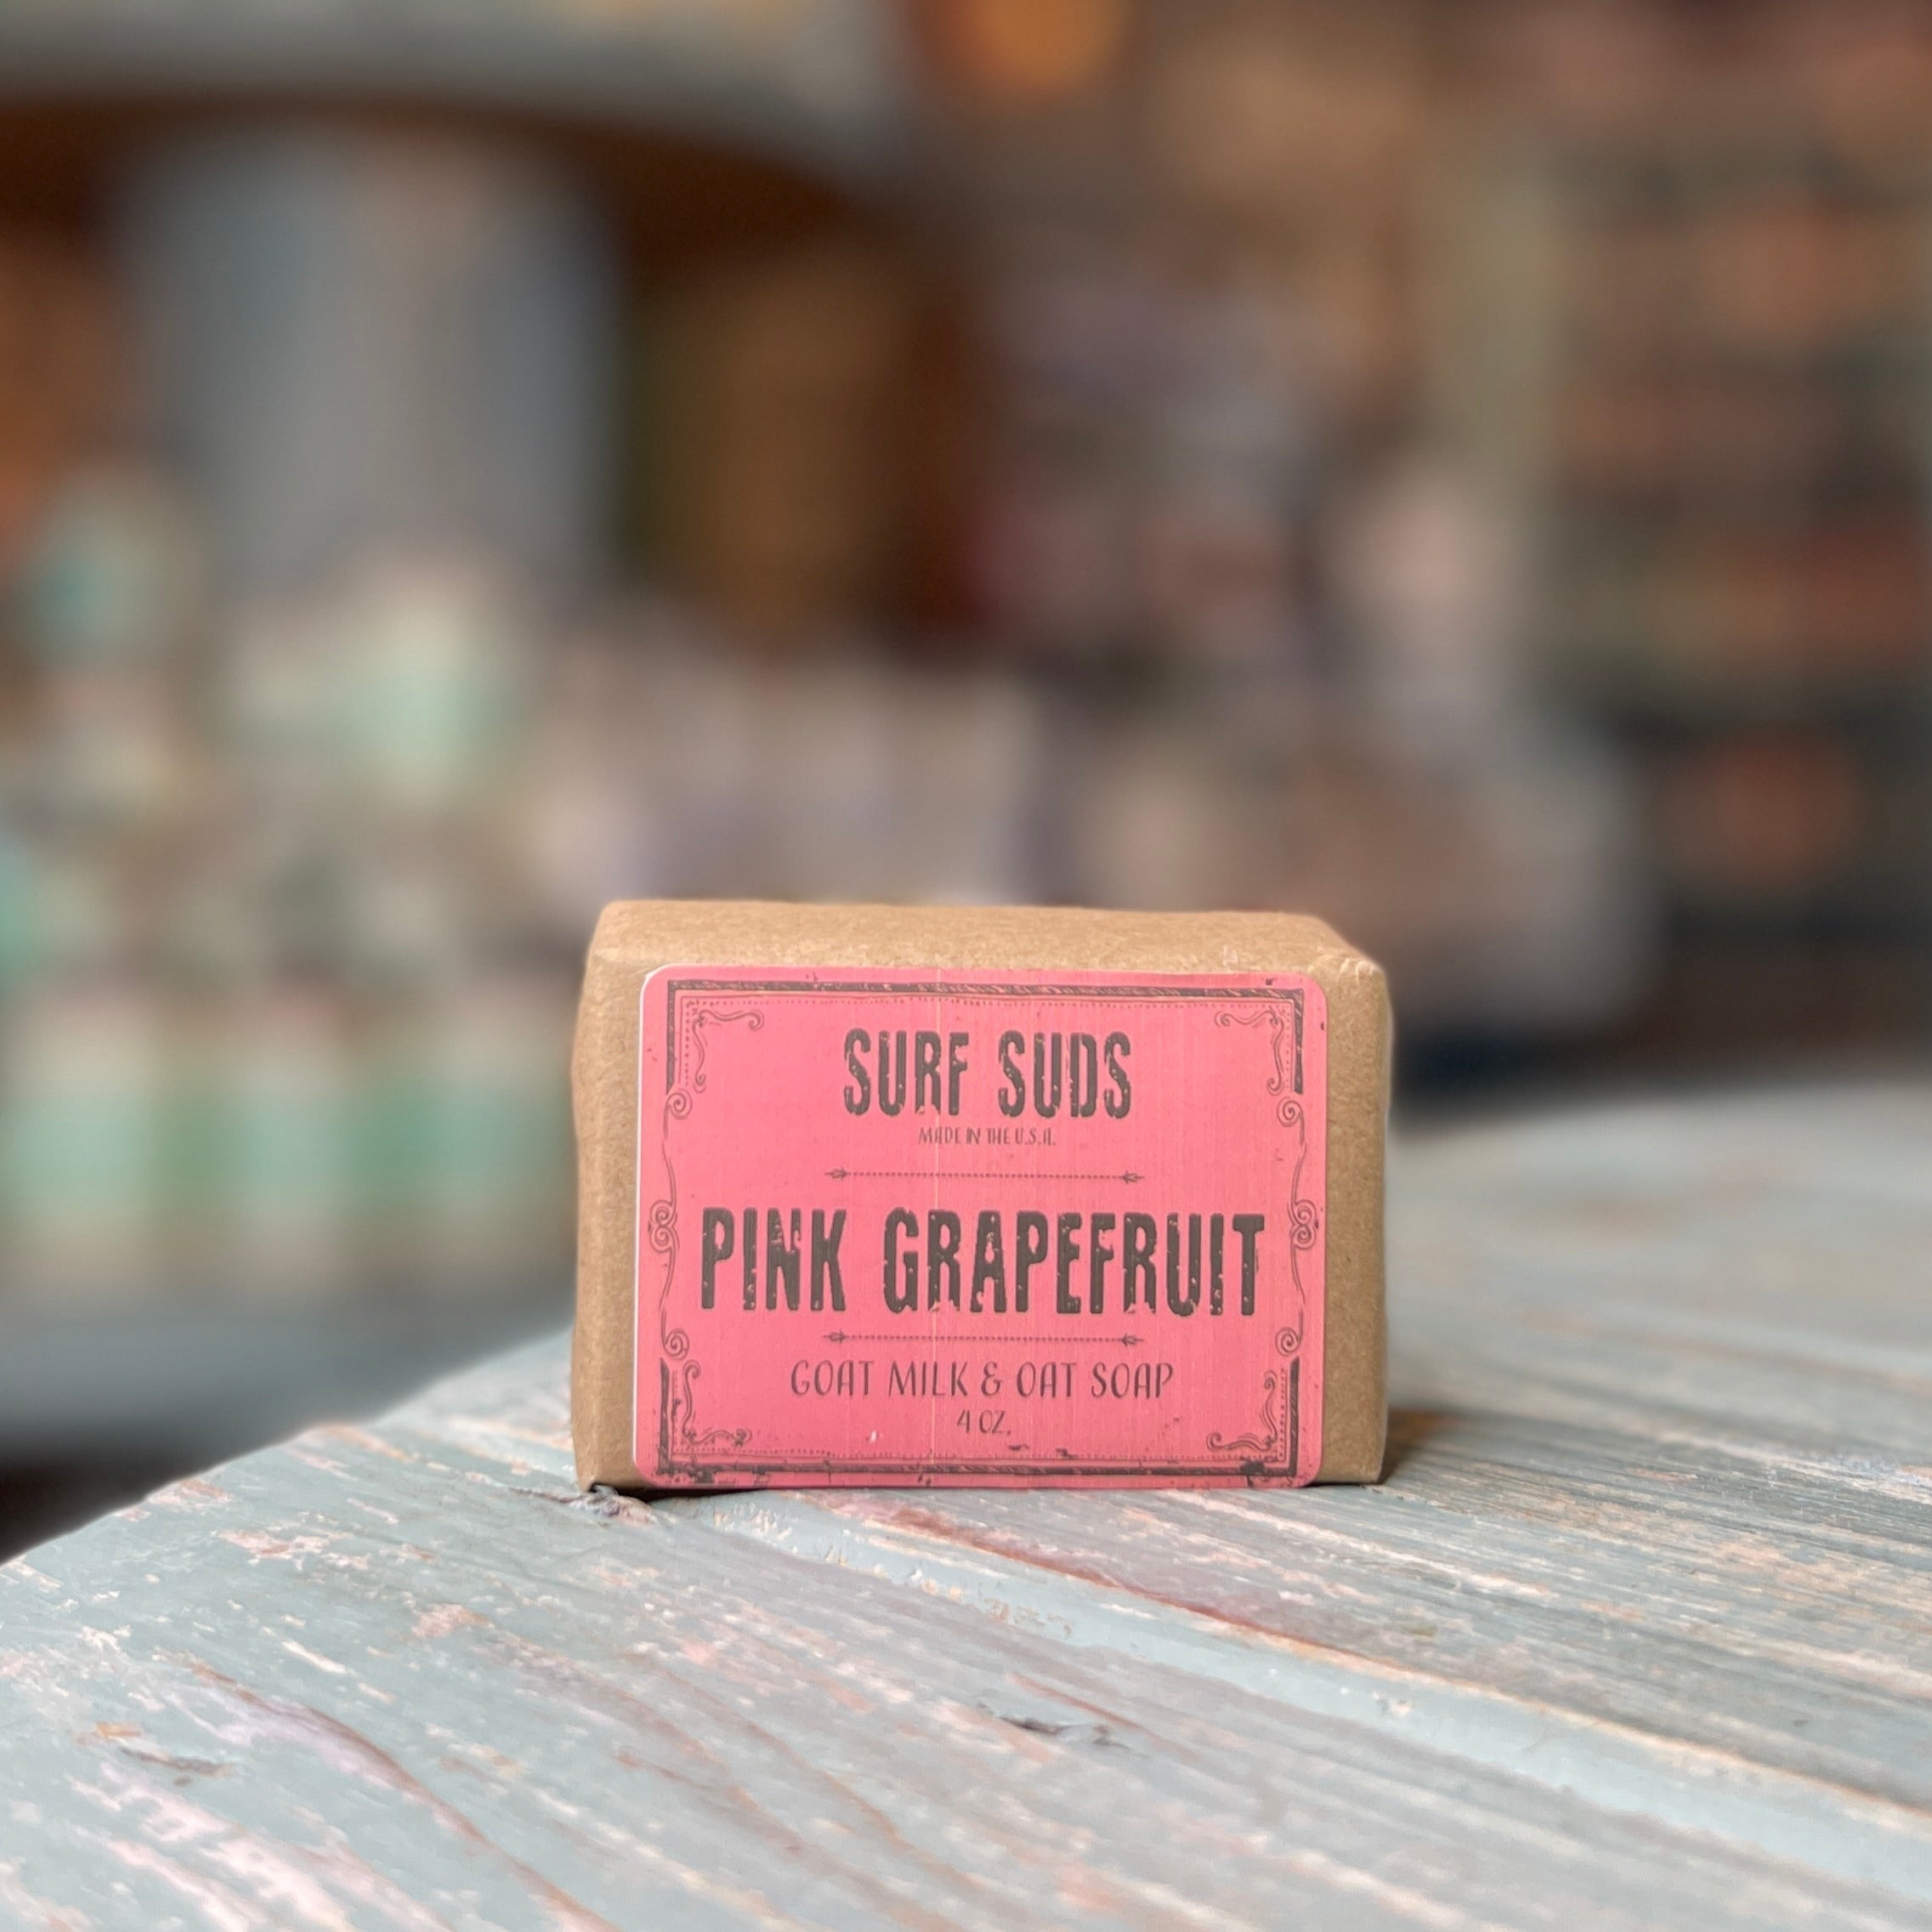 Pink Grapefruit Surf Soap